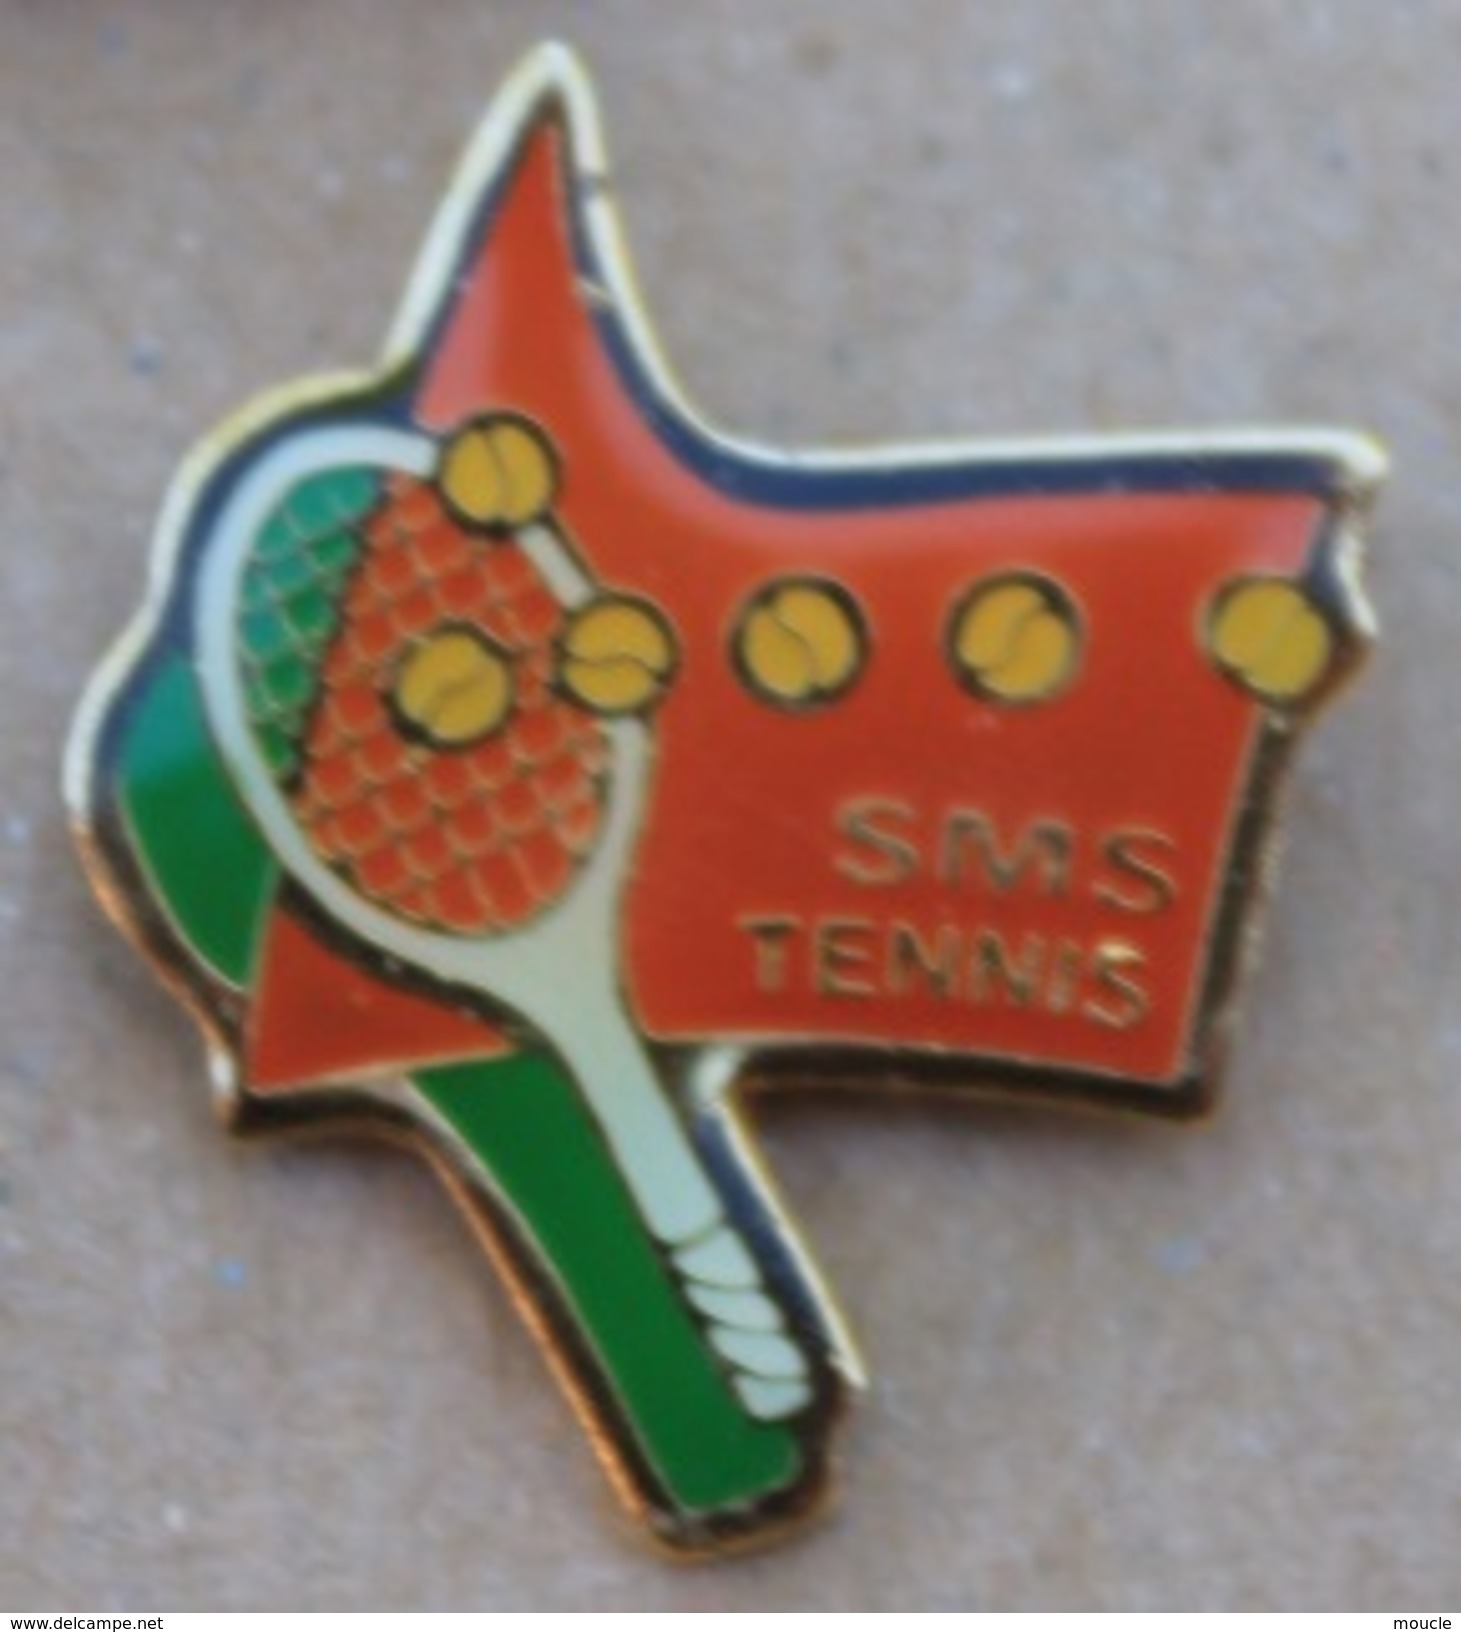 SMS TENNIS - RAQUETTE - BALLES    -    (18) - Tennis